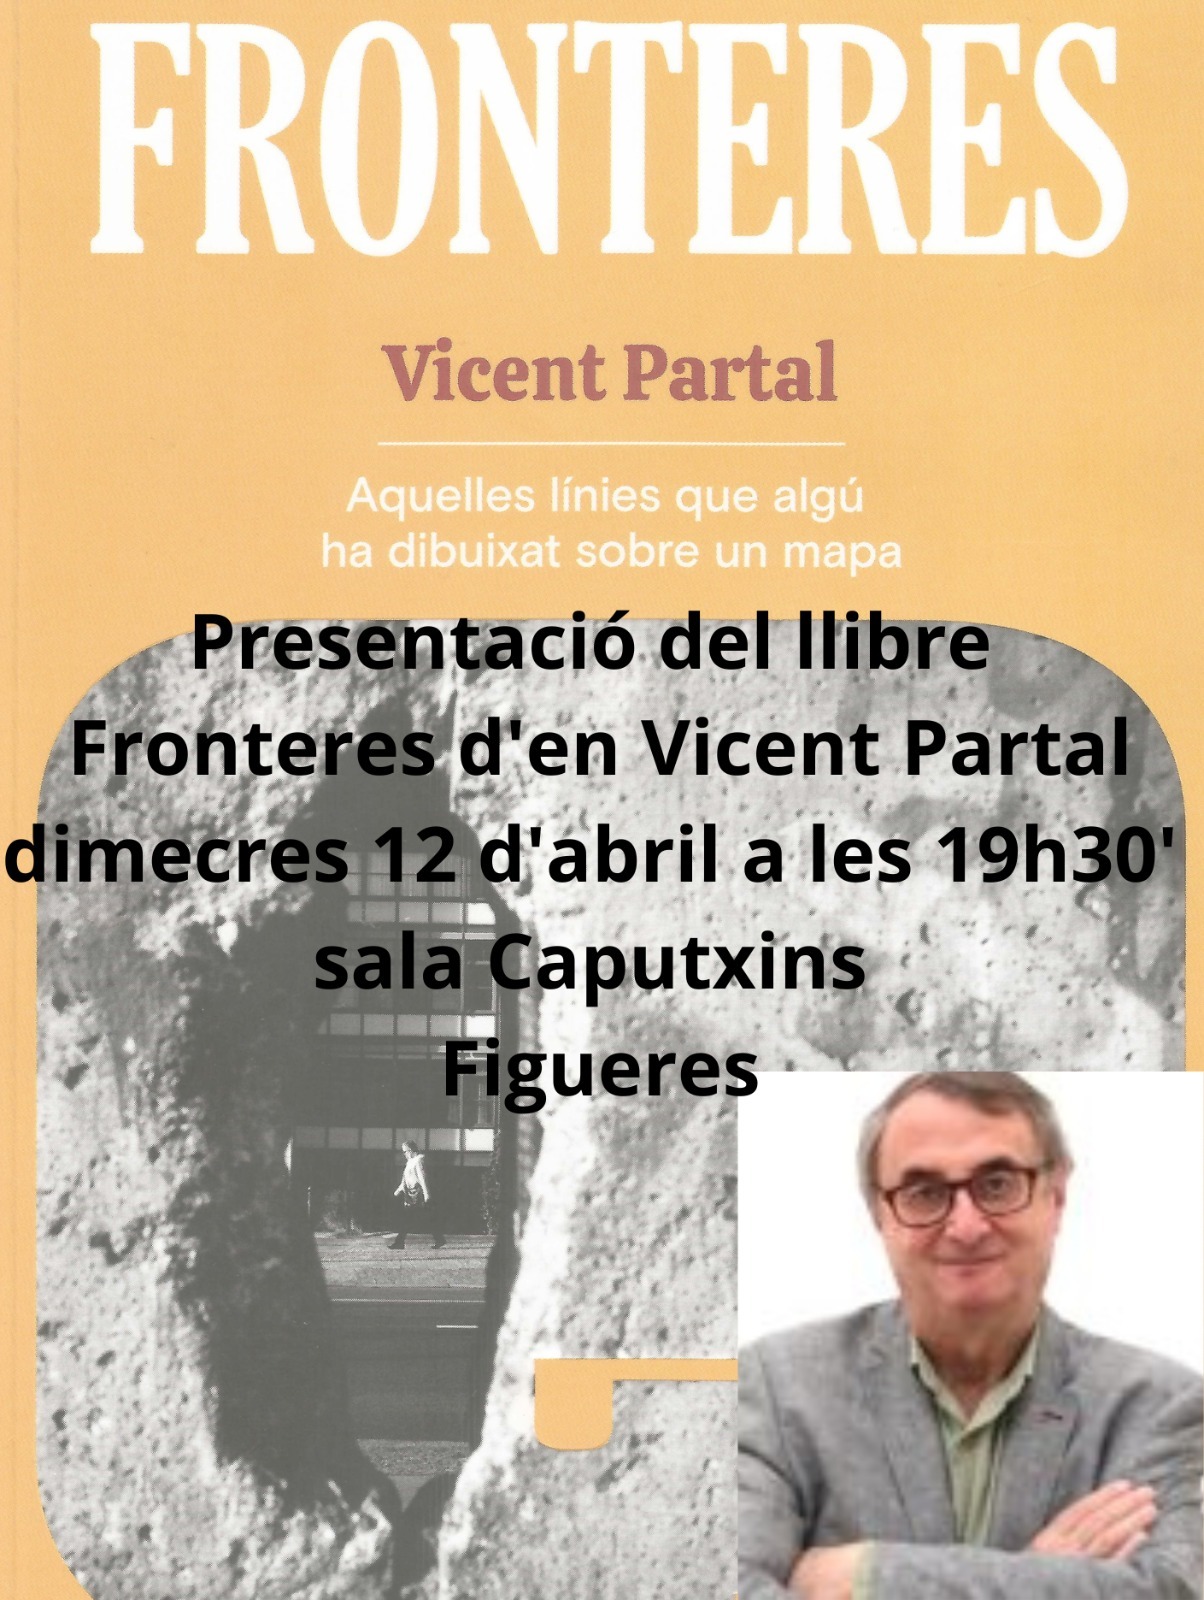 Presentació del llibre "Fronteres" de Vicent Partal